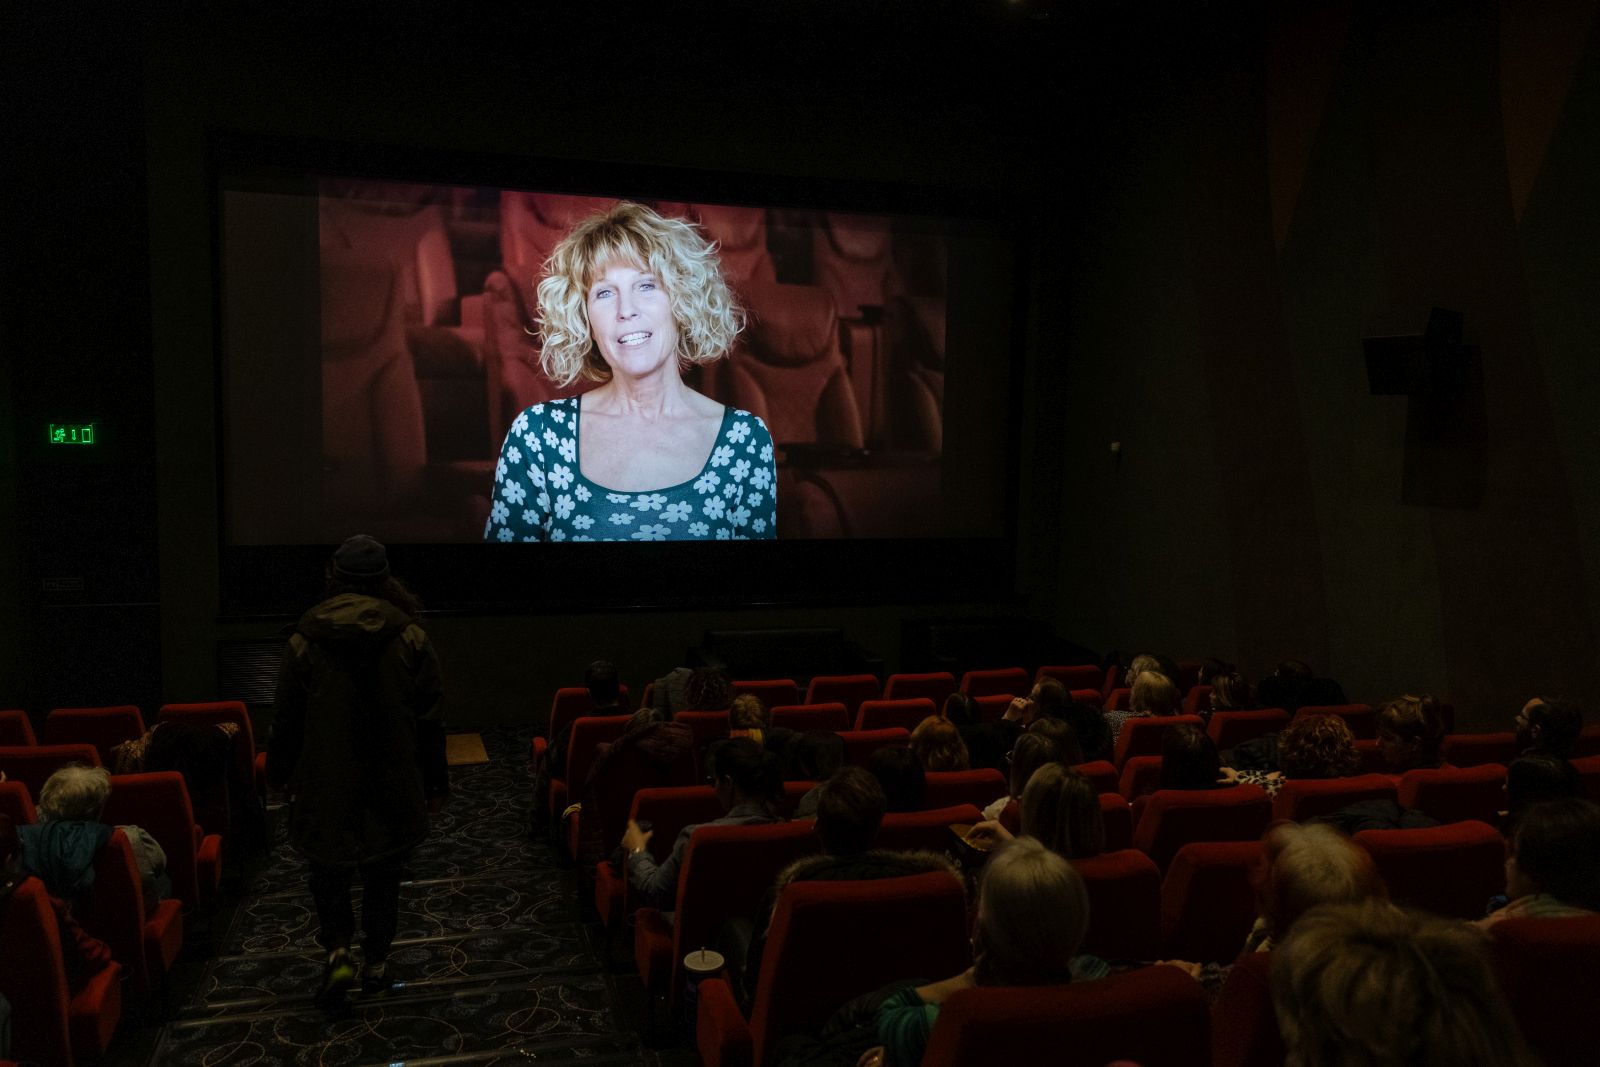 Elstartolt a BIDF – vasárnapig láthatunk izgalmas dokumentumfilmeket a Cinema Cityben